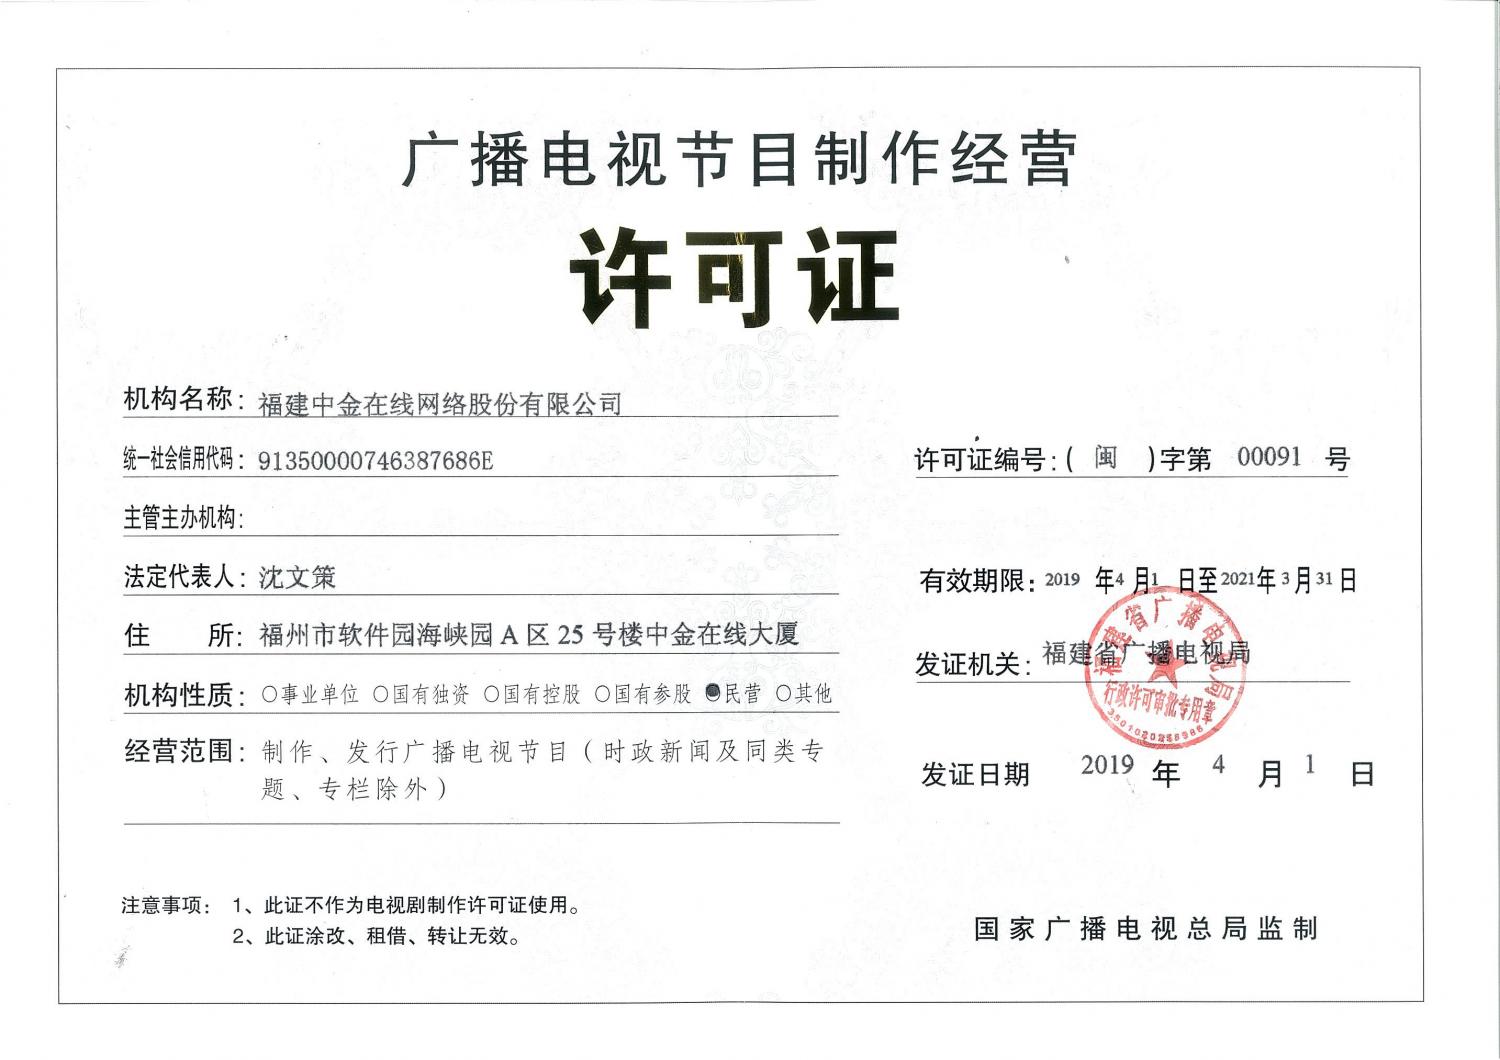 中金在线广播电视节目制作经营许可证(闽)字第00091号